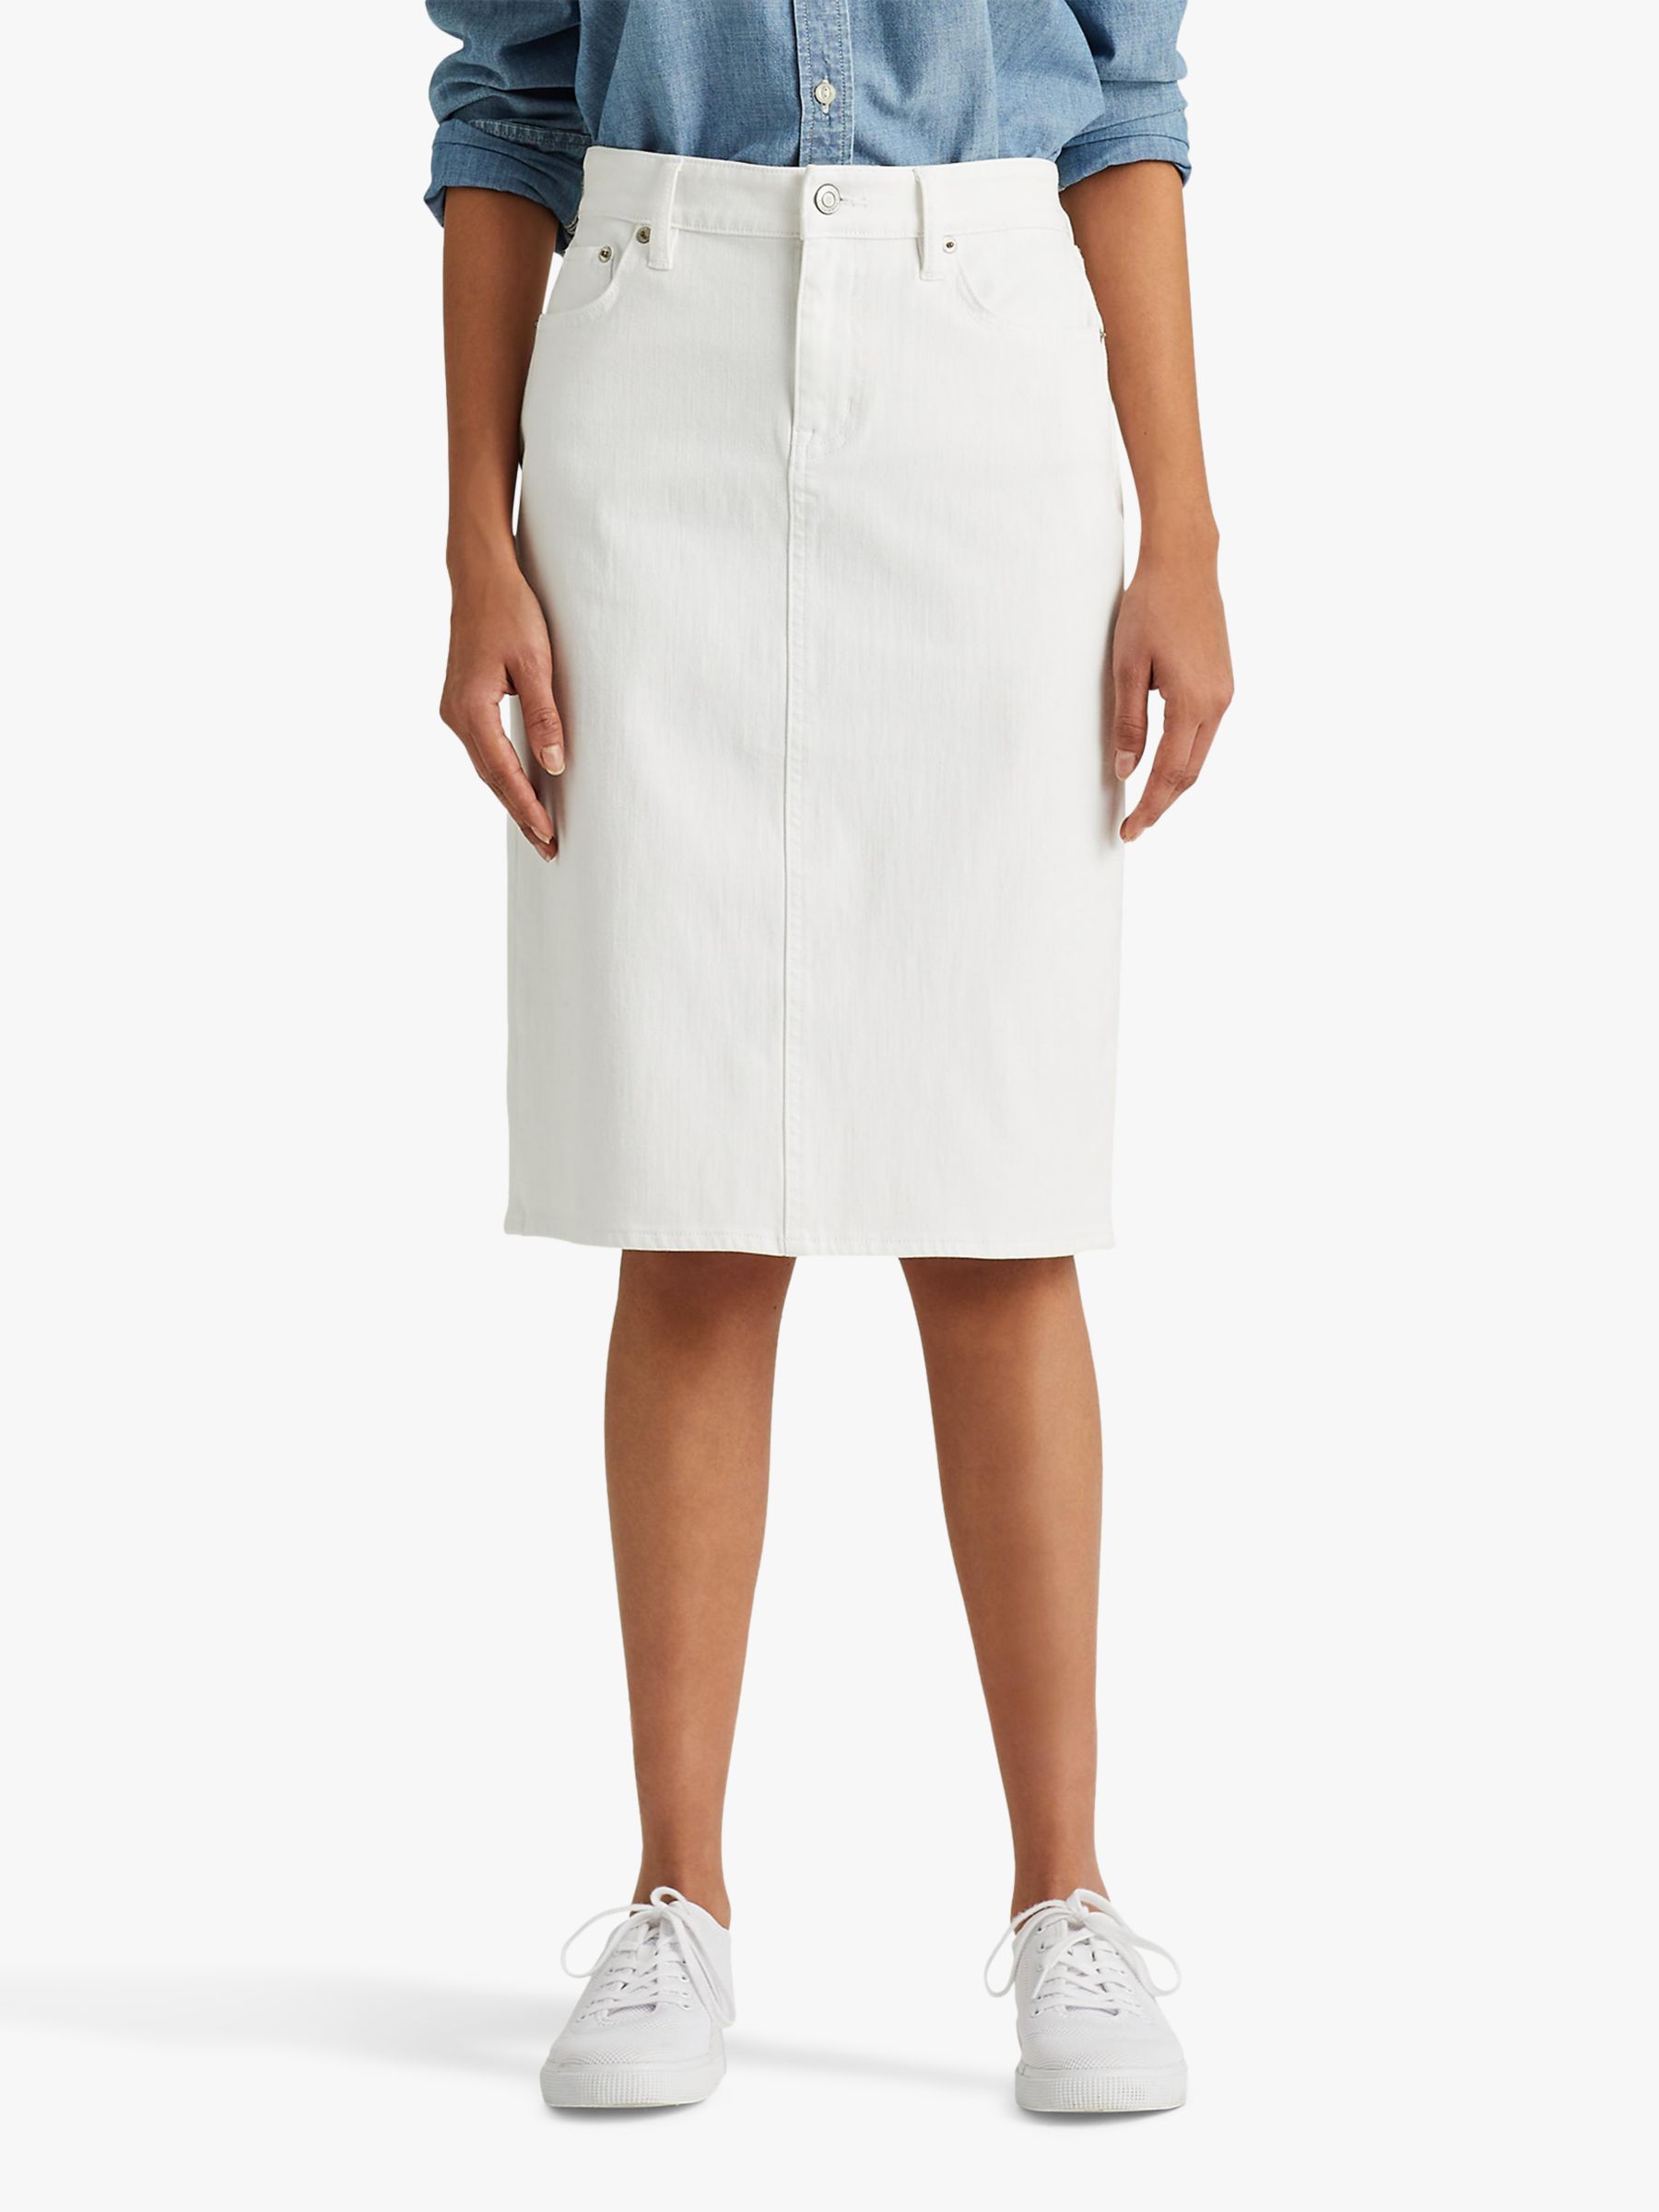 Lauren Ralph Lauren Daniella Curvy Straight Knee Length Skirt, White